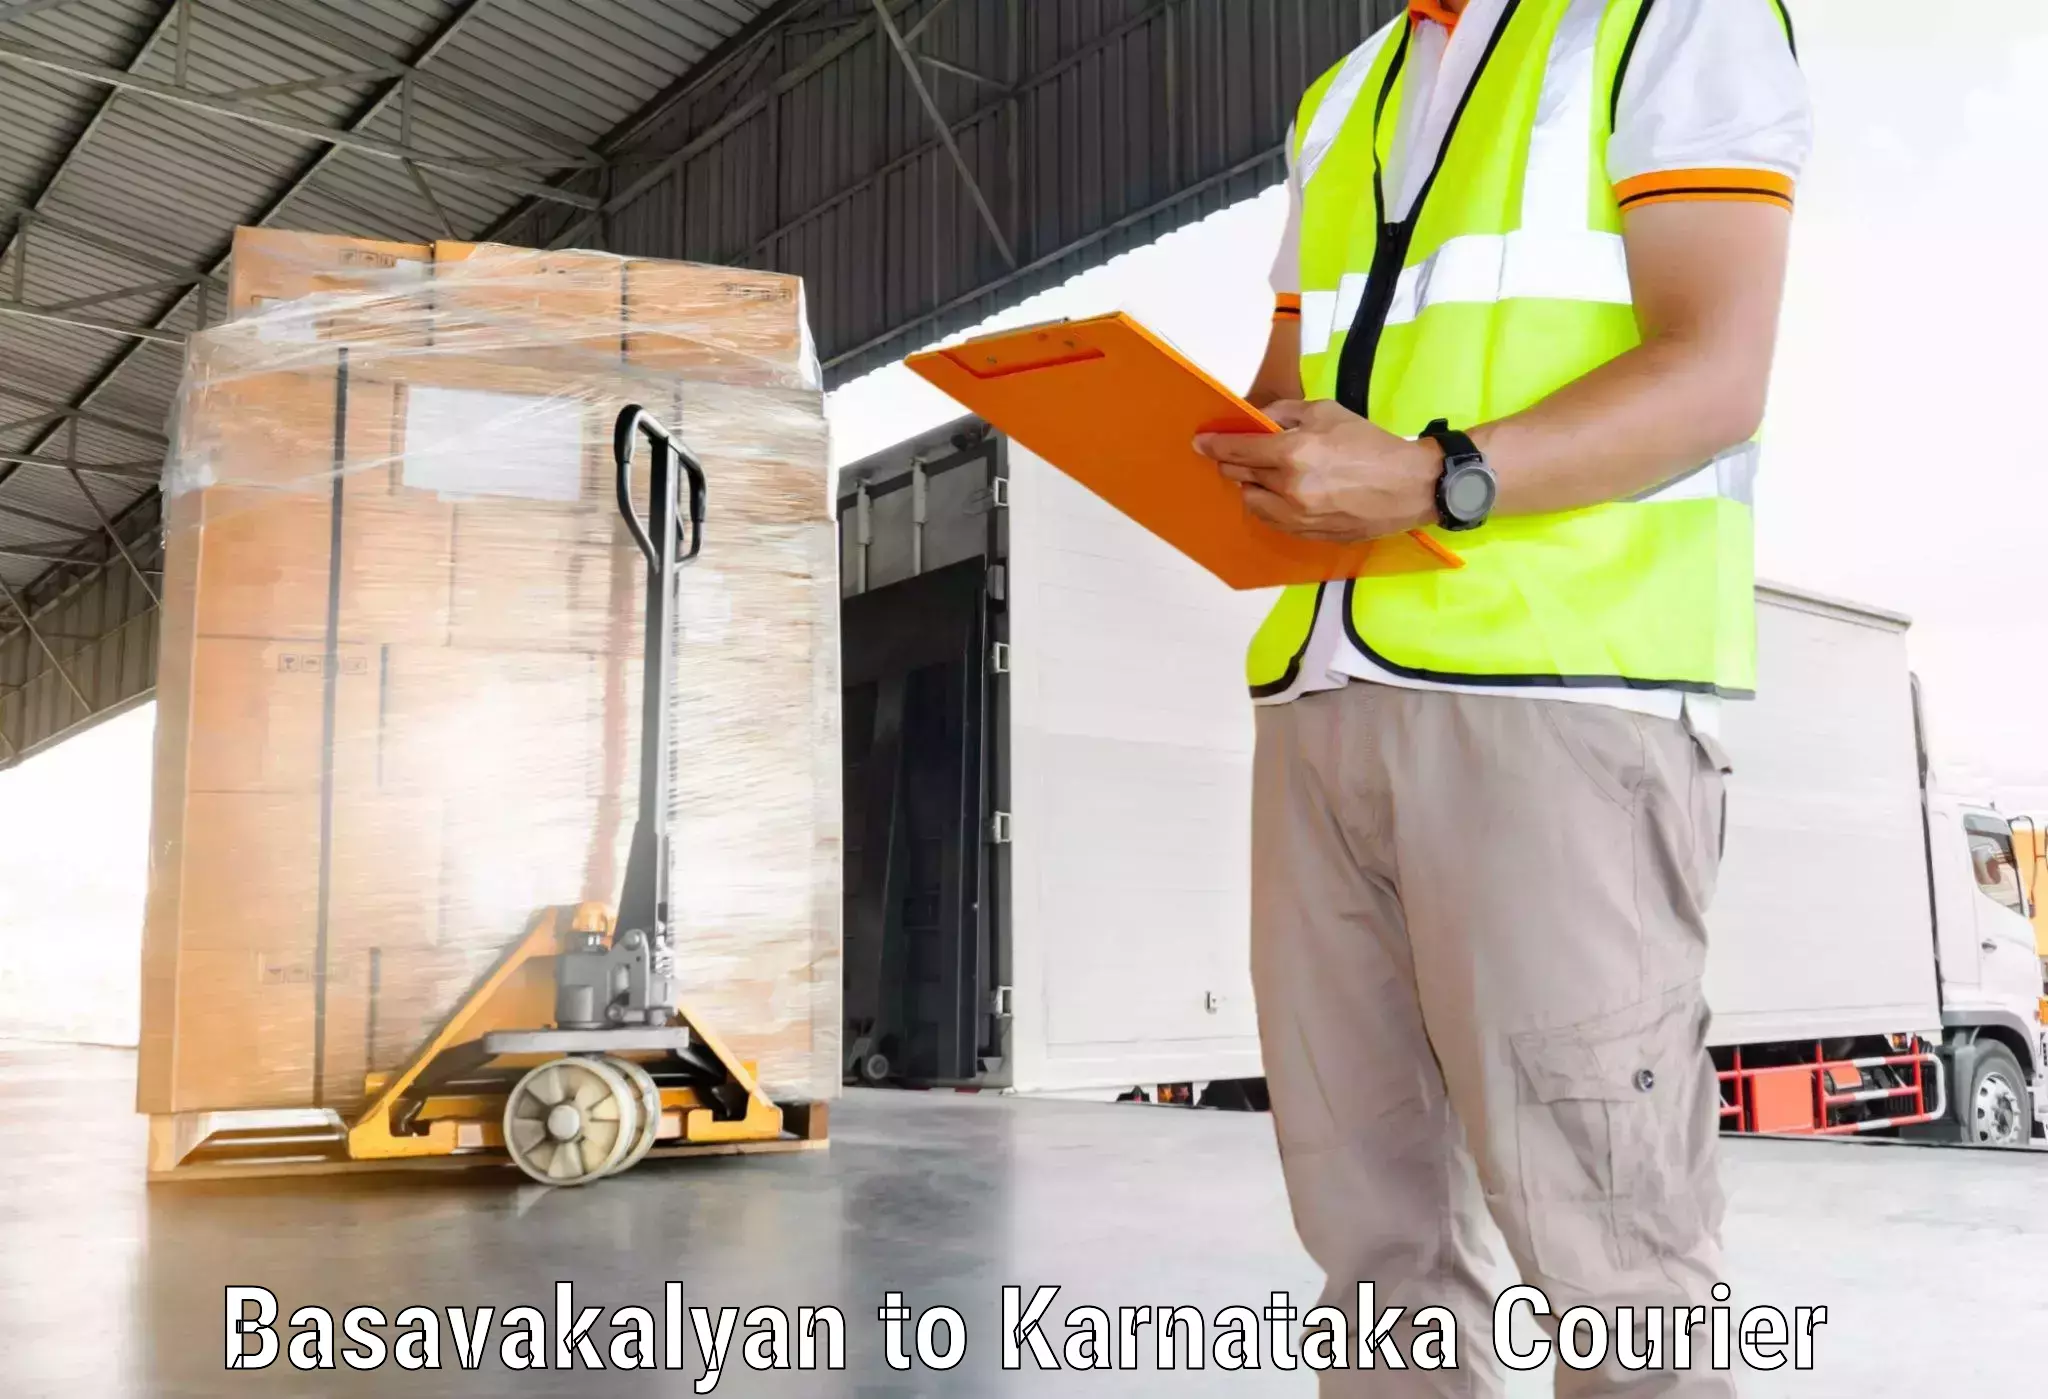 Fast delivery service Basavakalyan to Huliyar